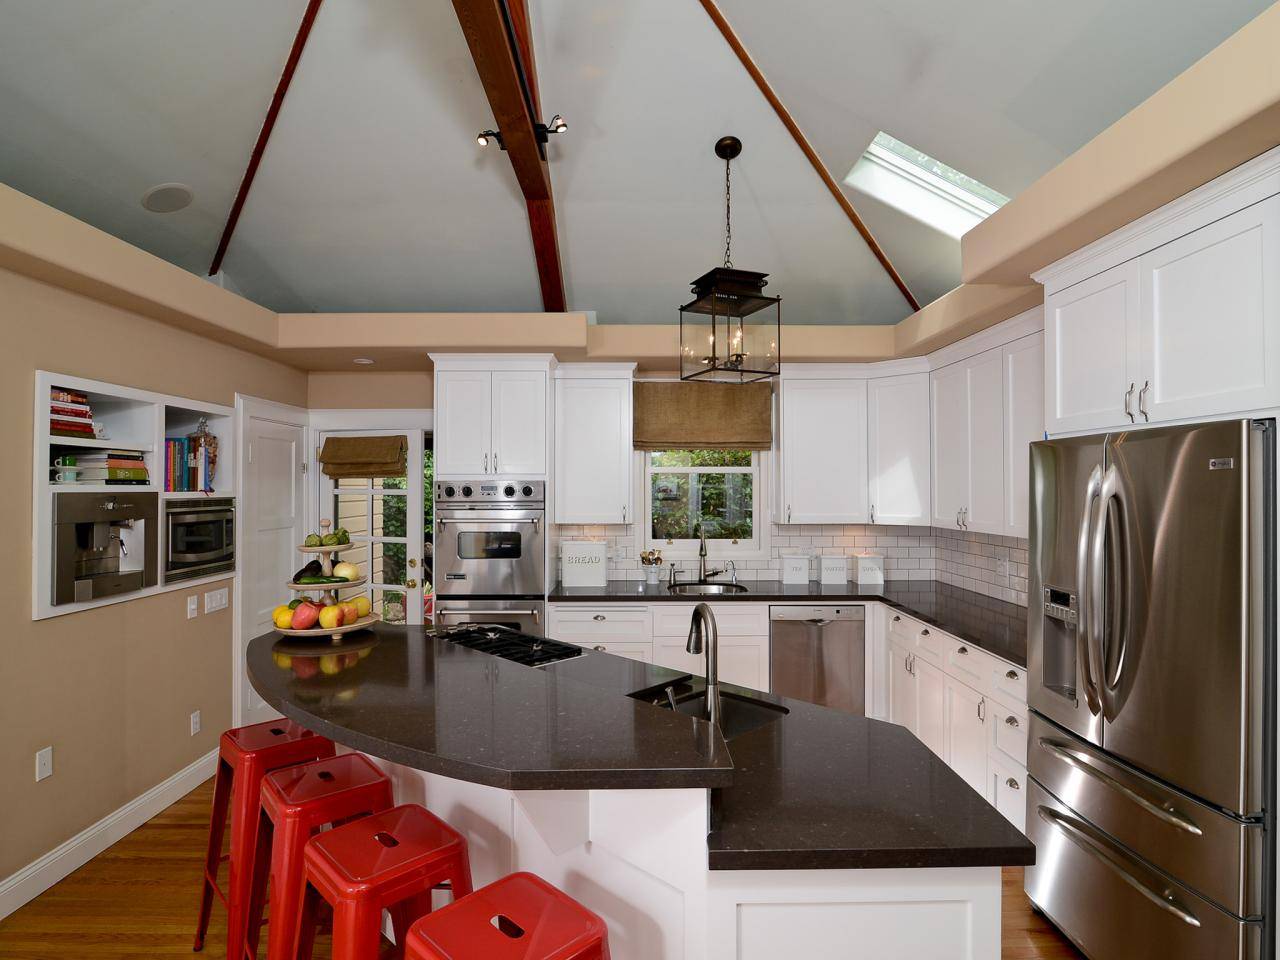 Натяжные потолки на кухне: обзор вариантов дизайна